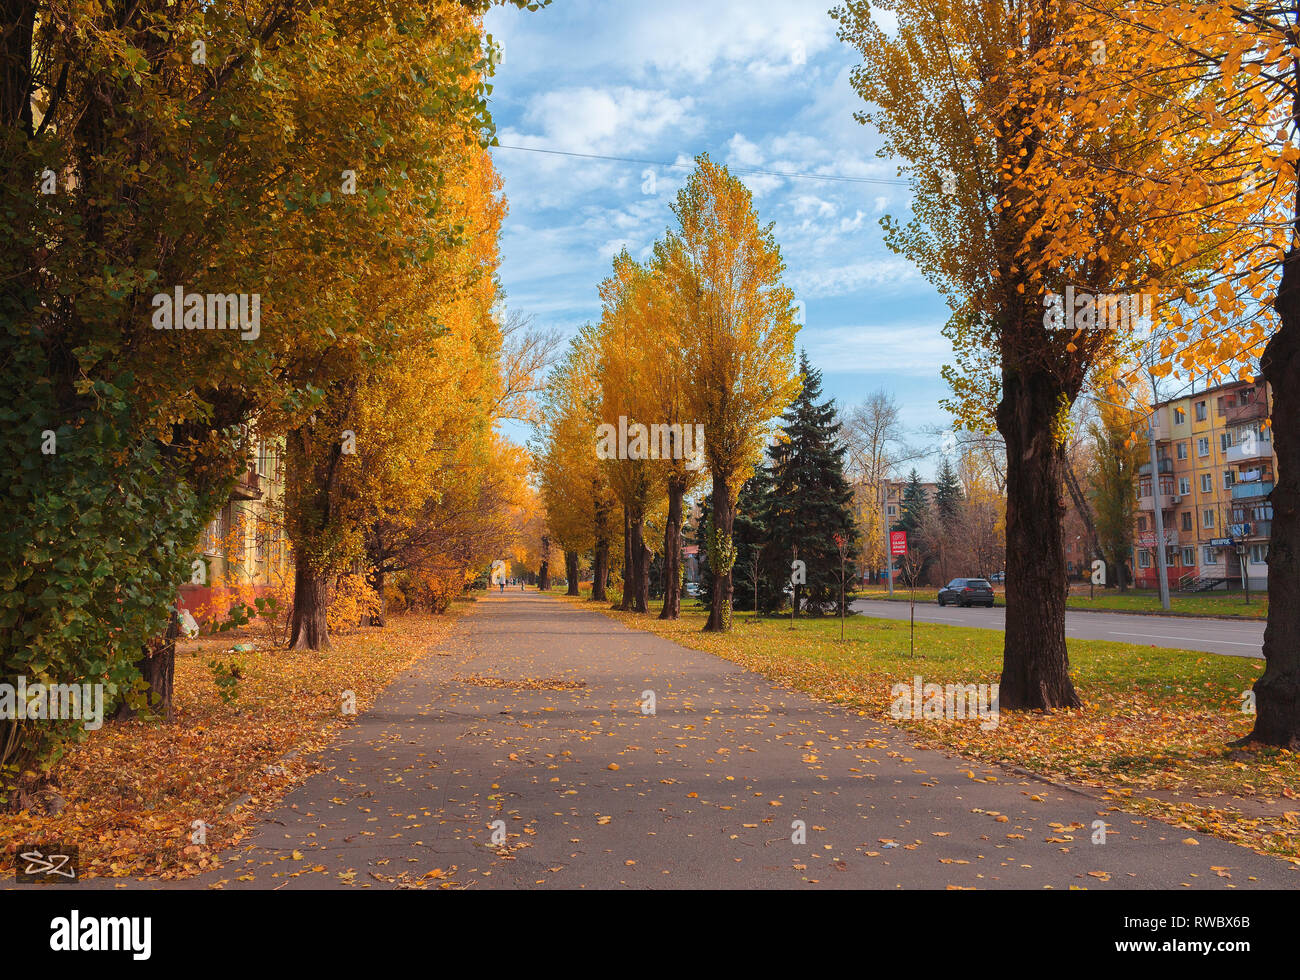 Paysage d'automne. Une allée de peupliers sur le fond de ciel bleu. Un paysage de la ville d'automne avec des maisons et des voitures sur la route. Banque D'Images